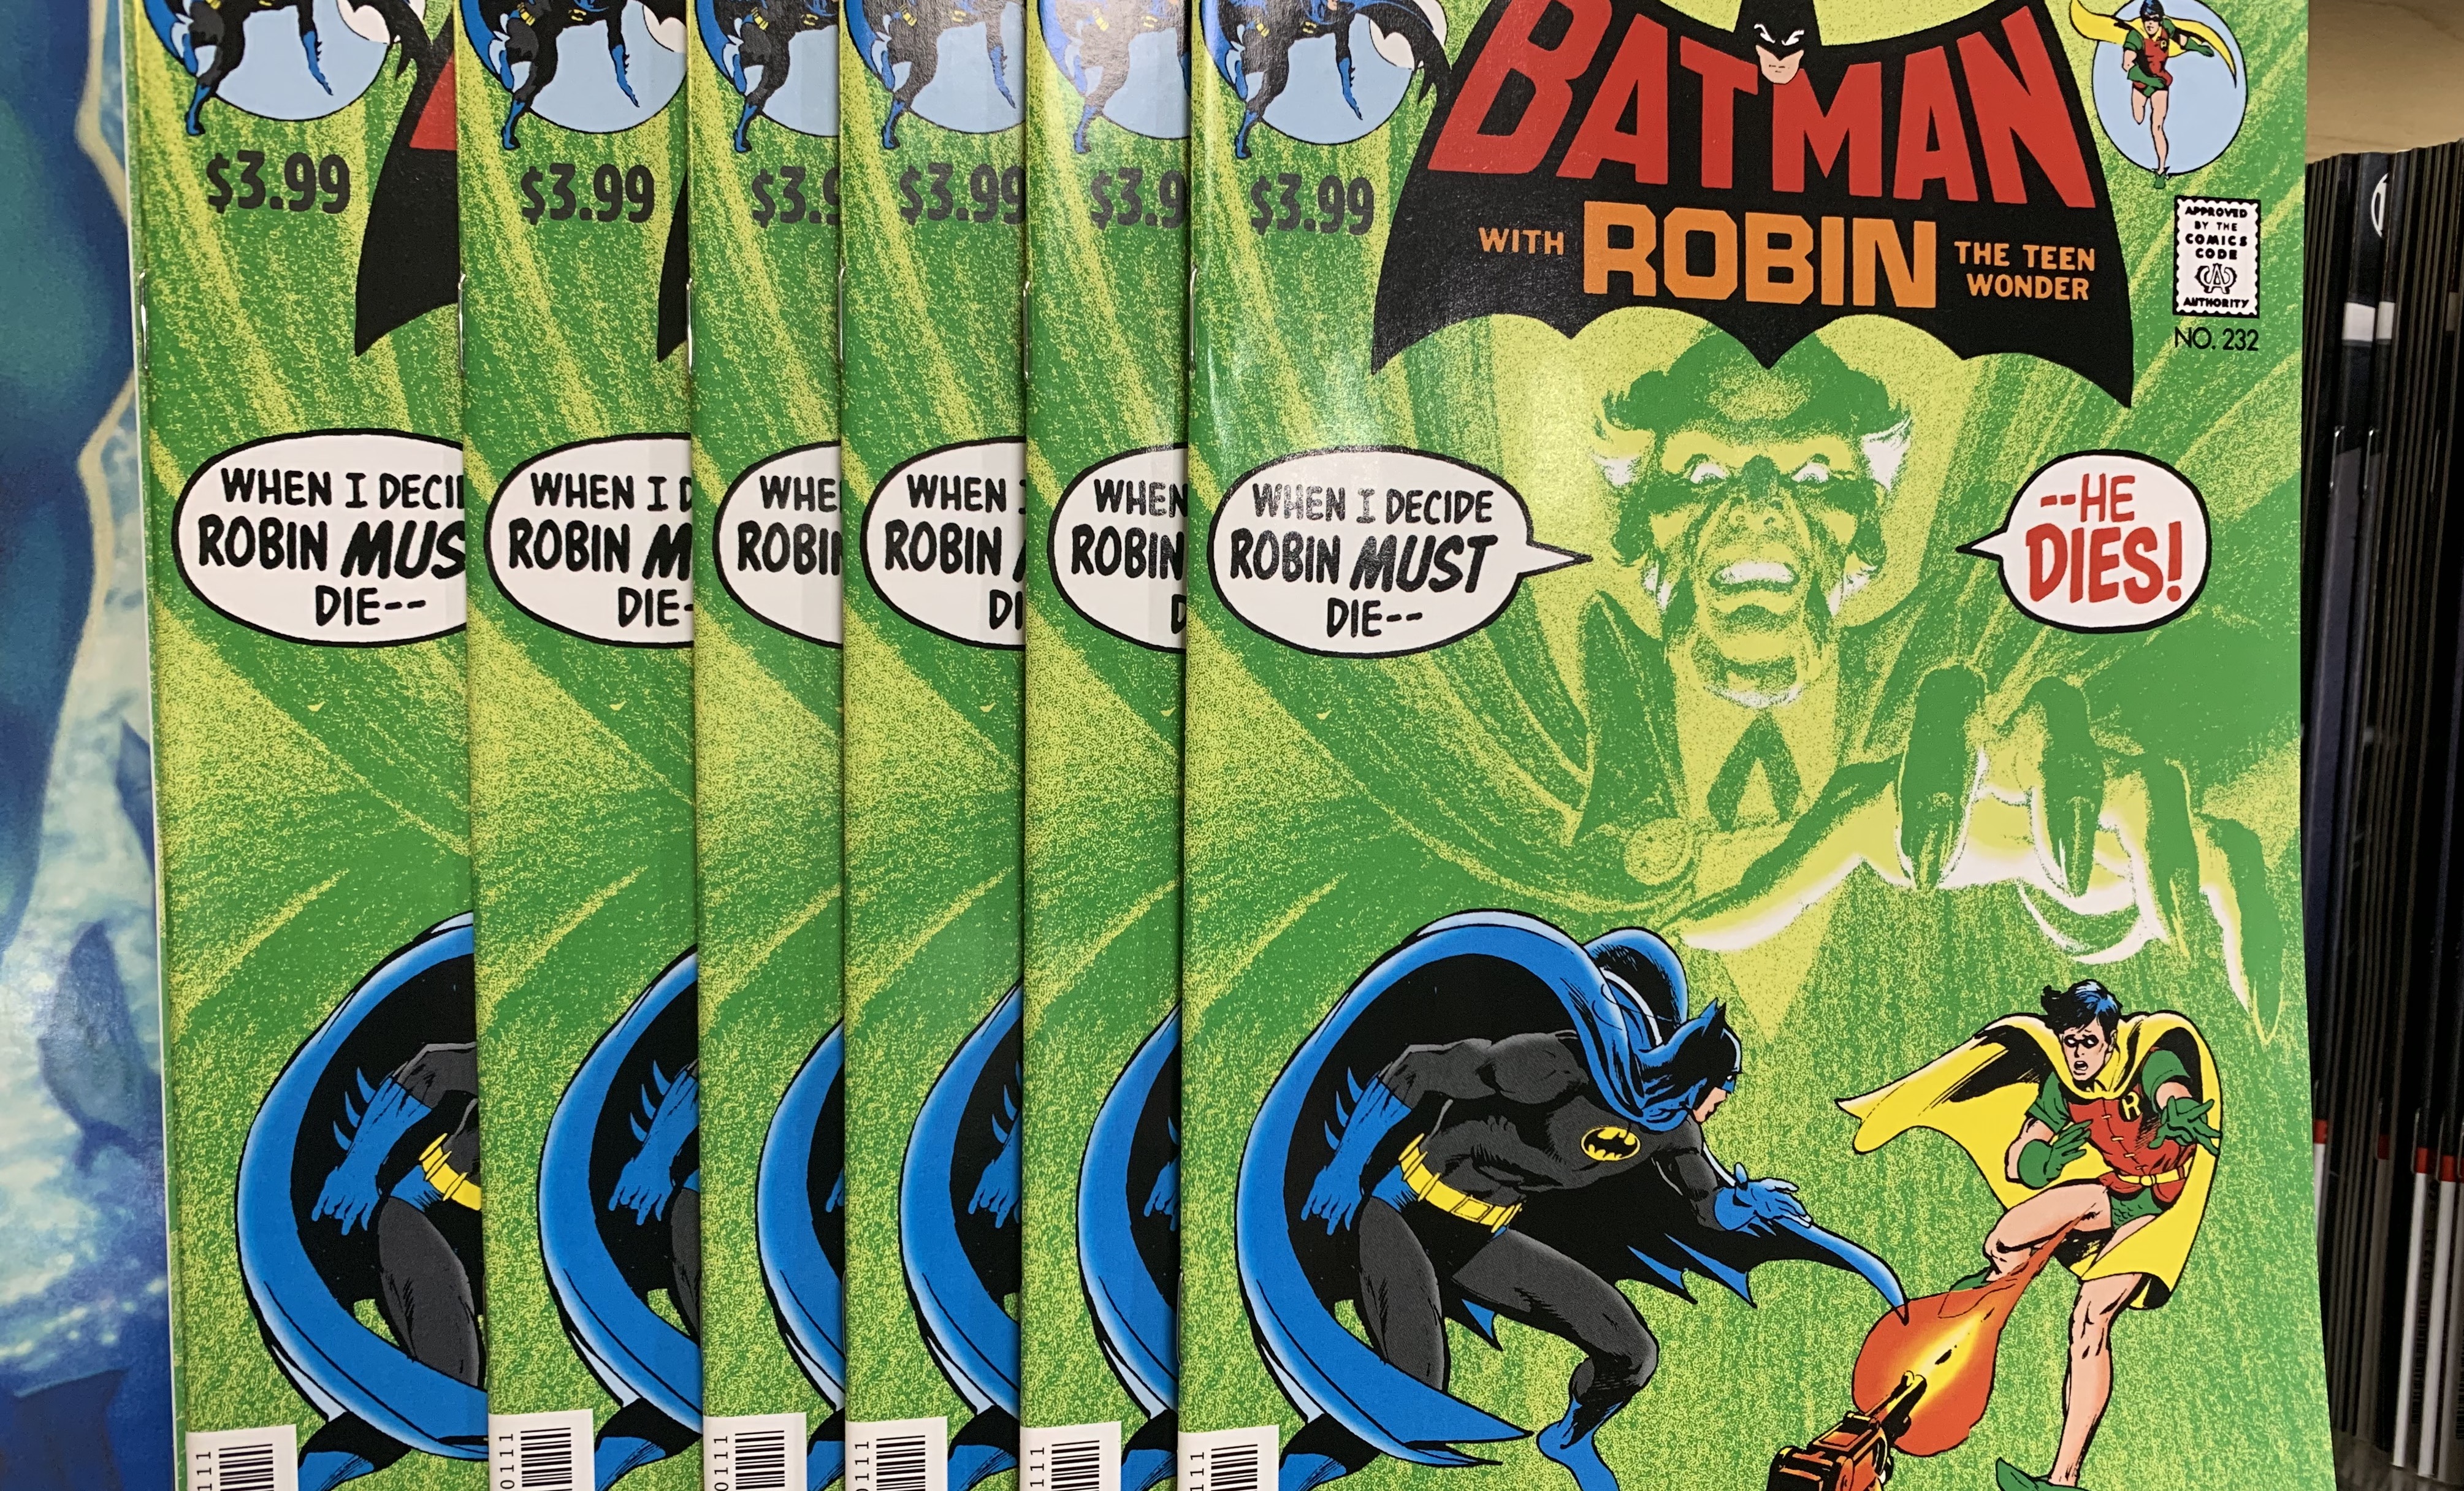 REVIEW: The BATMAN #232 Facsimile Edition Is a Real Joy | 13th Dimension,  Comics, Creators, Culture